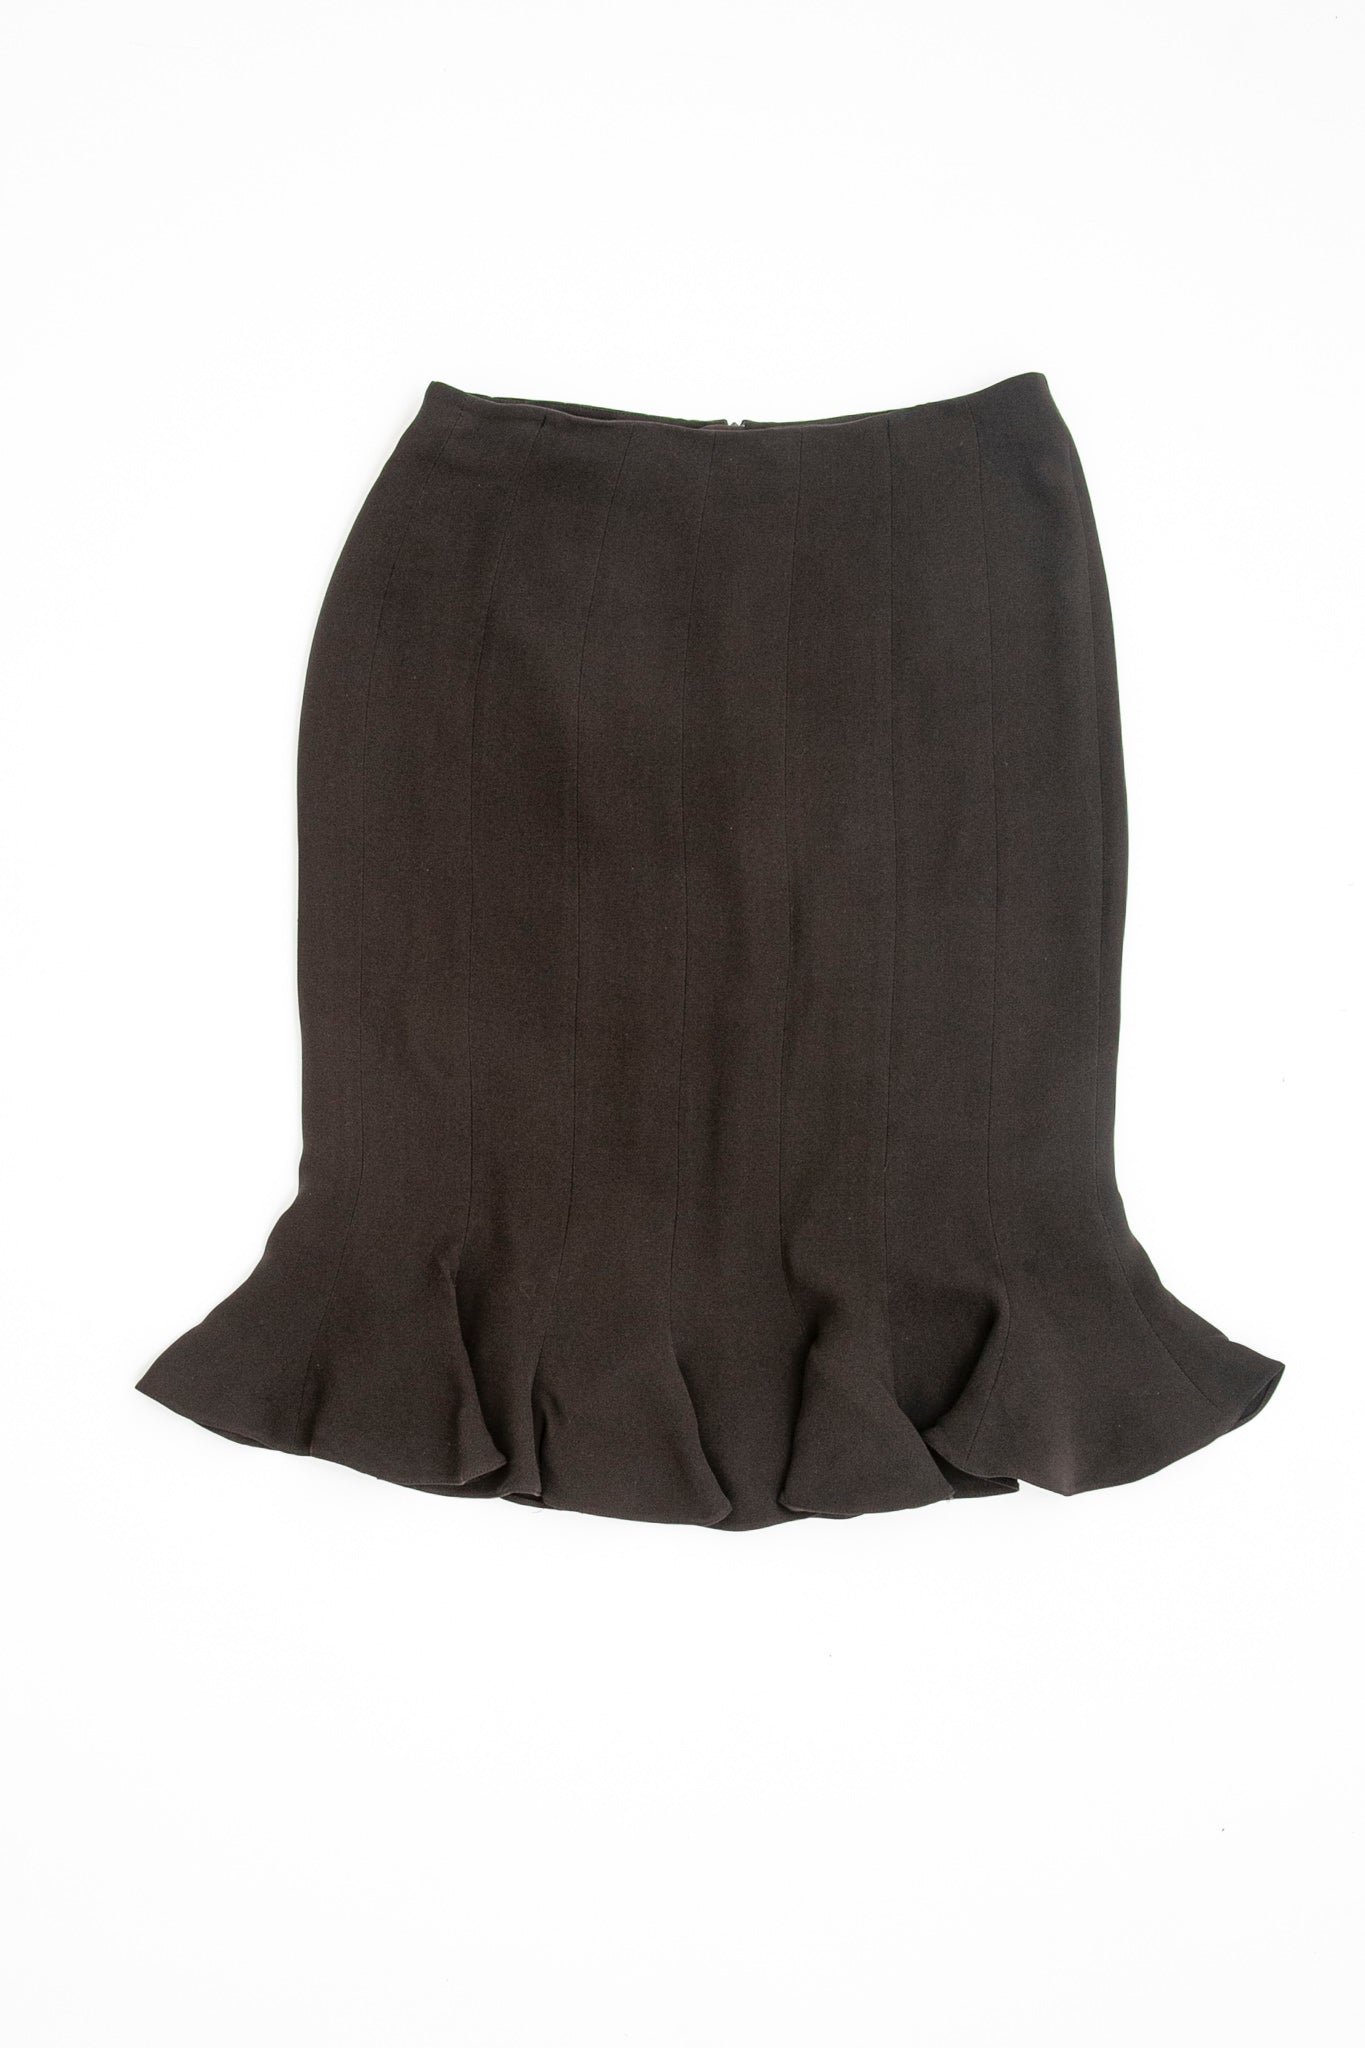 Armani Brown Pleated Skirt